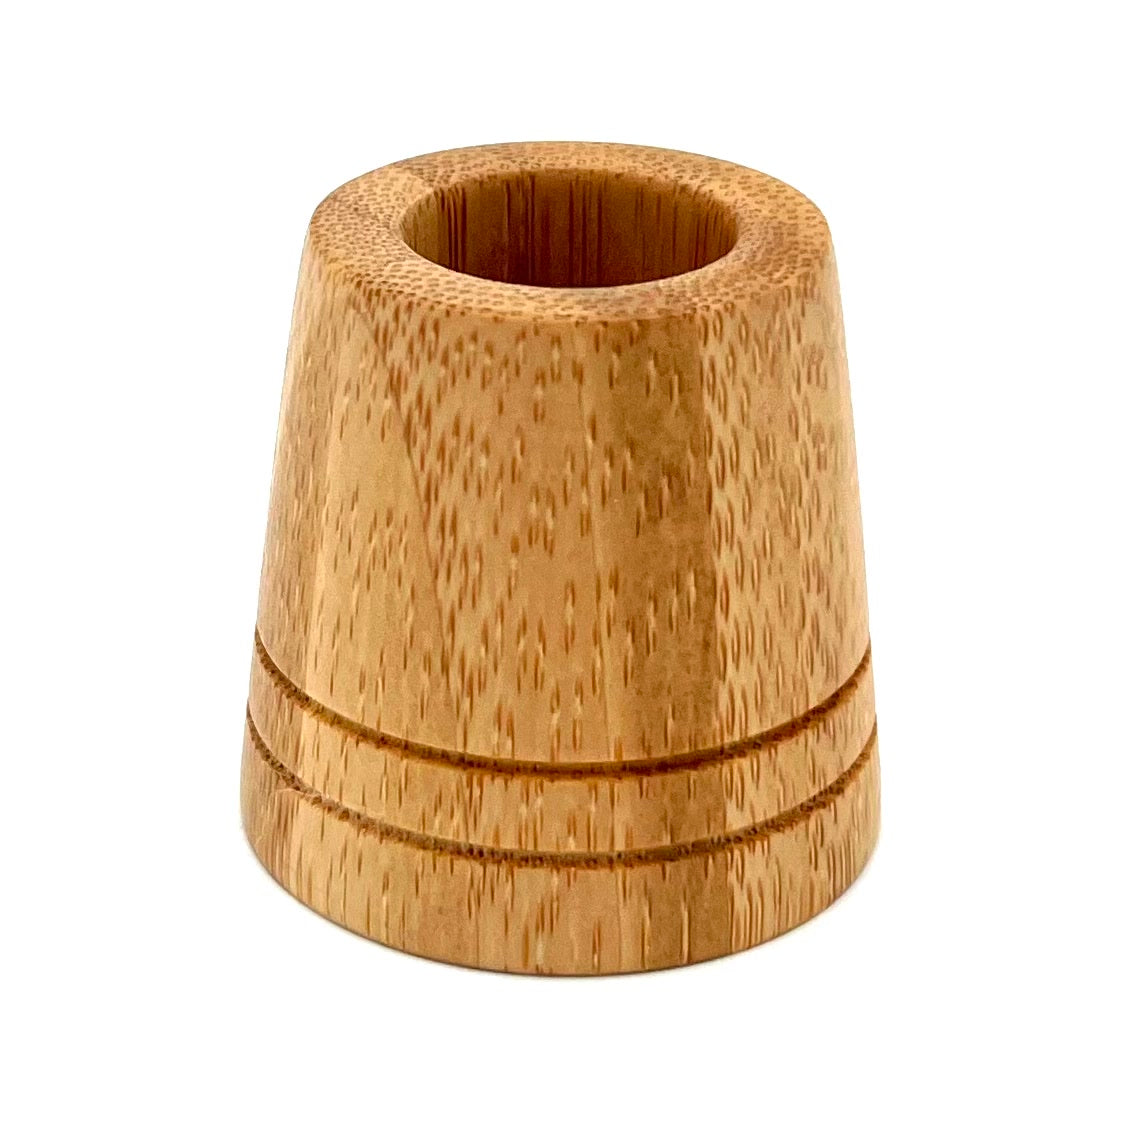 JUNGLE CULTURE Ständer für Rasierhobel Bamboo aus Holz | plastikfrei